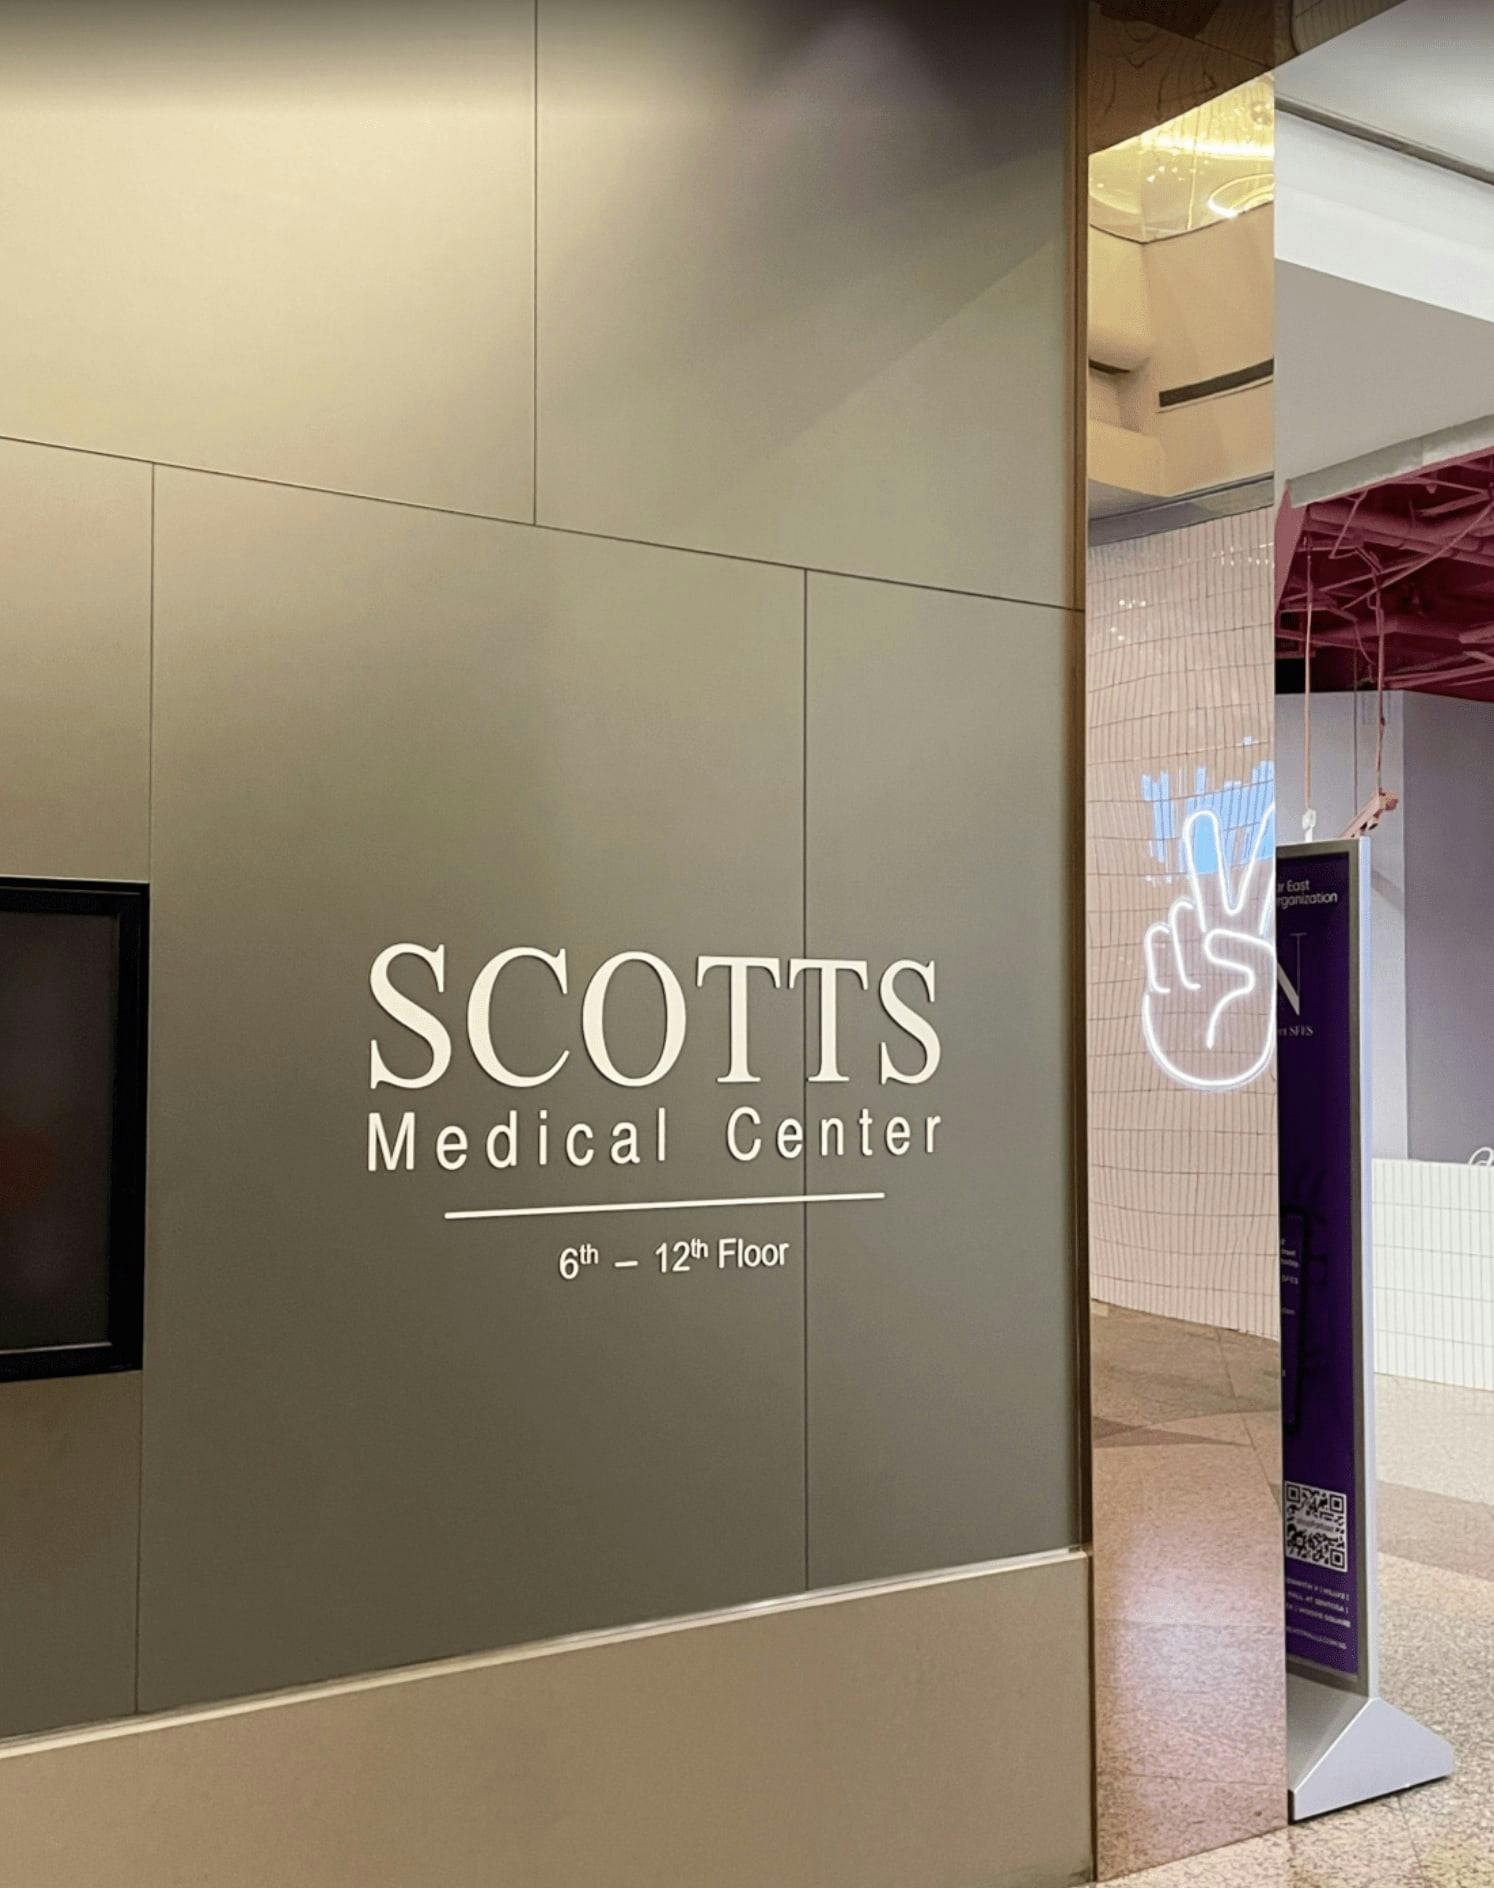 Scotts Medical Center